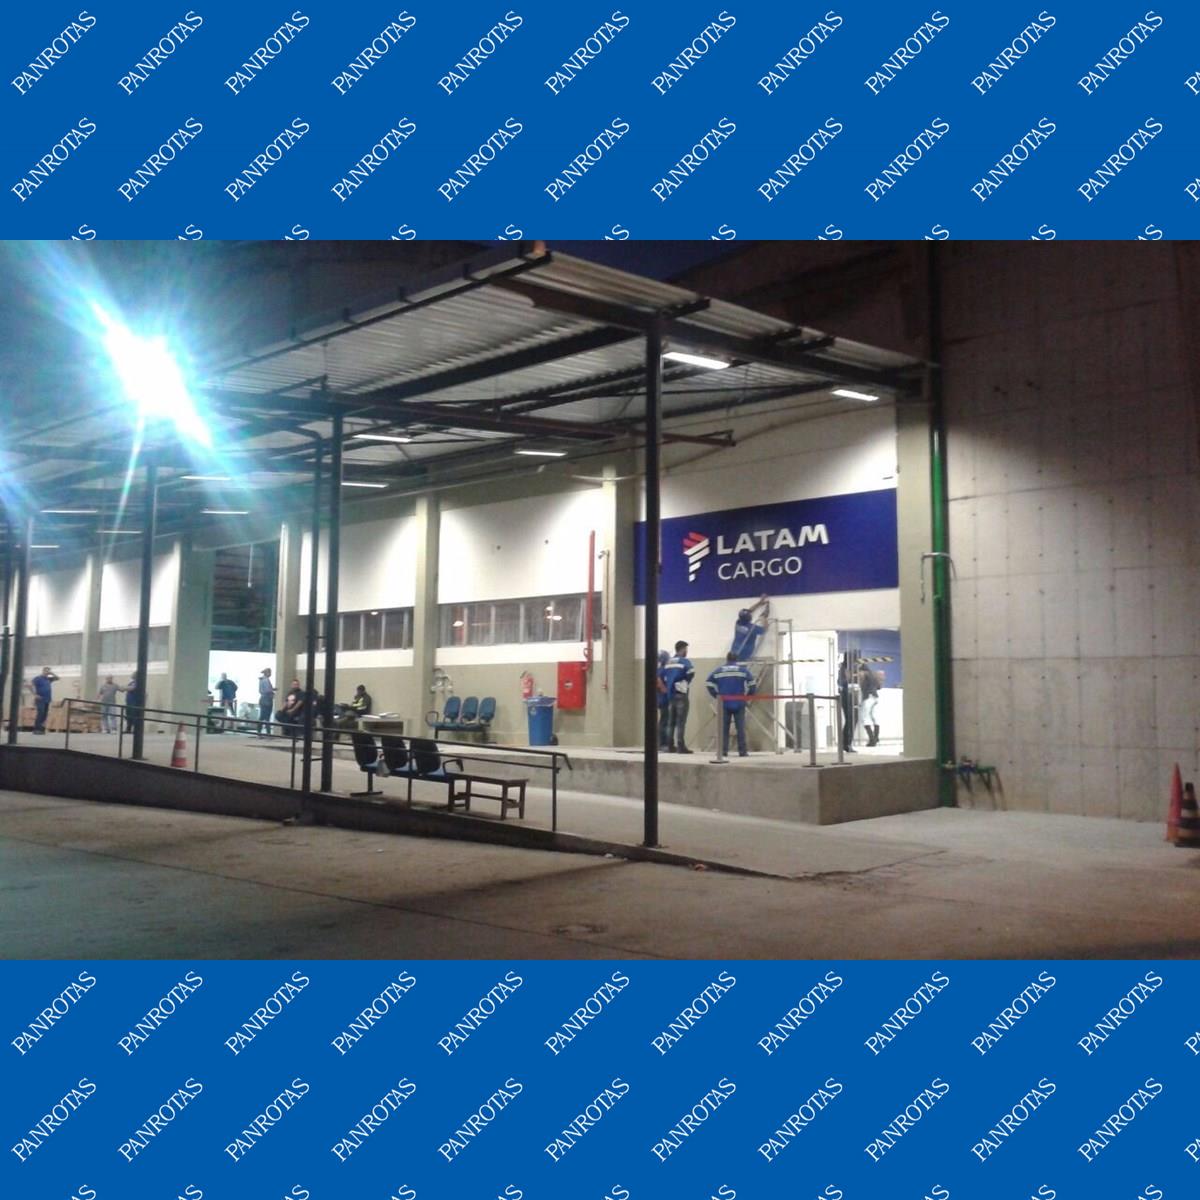 Terminal da LATAM Cargo em Guarulhos ganha nova identidade visual - Aeroflap